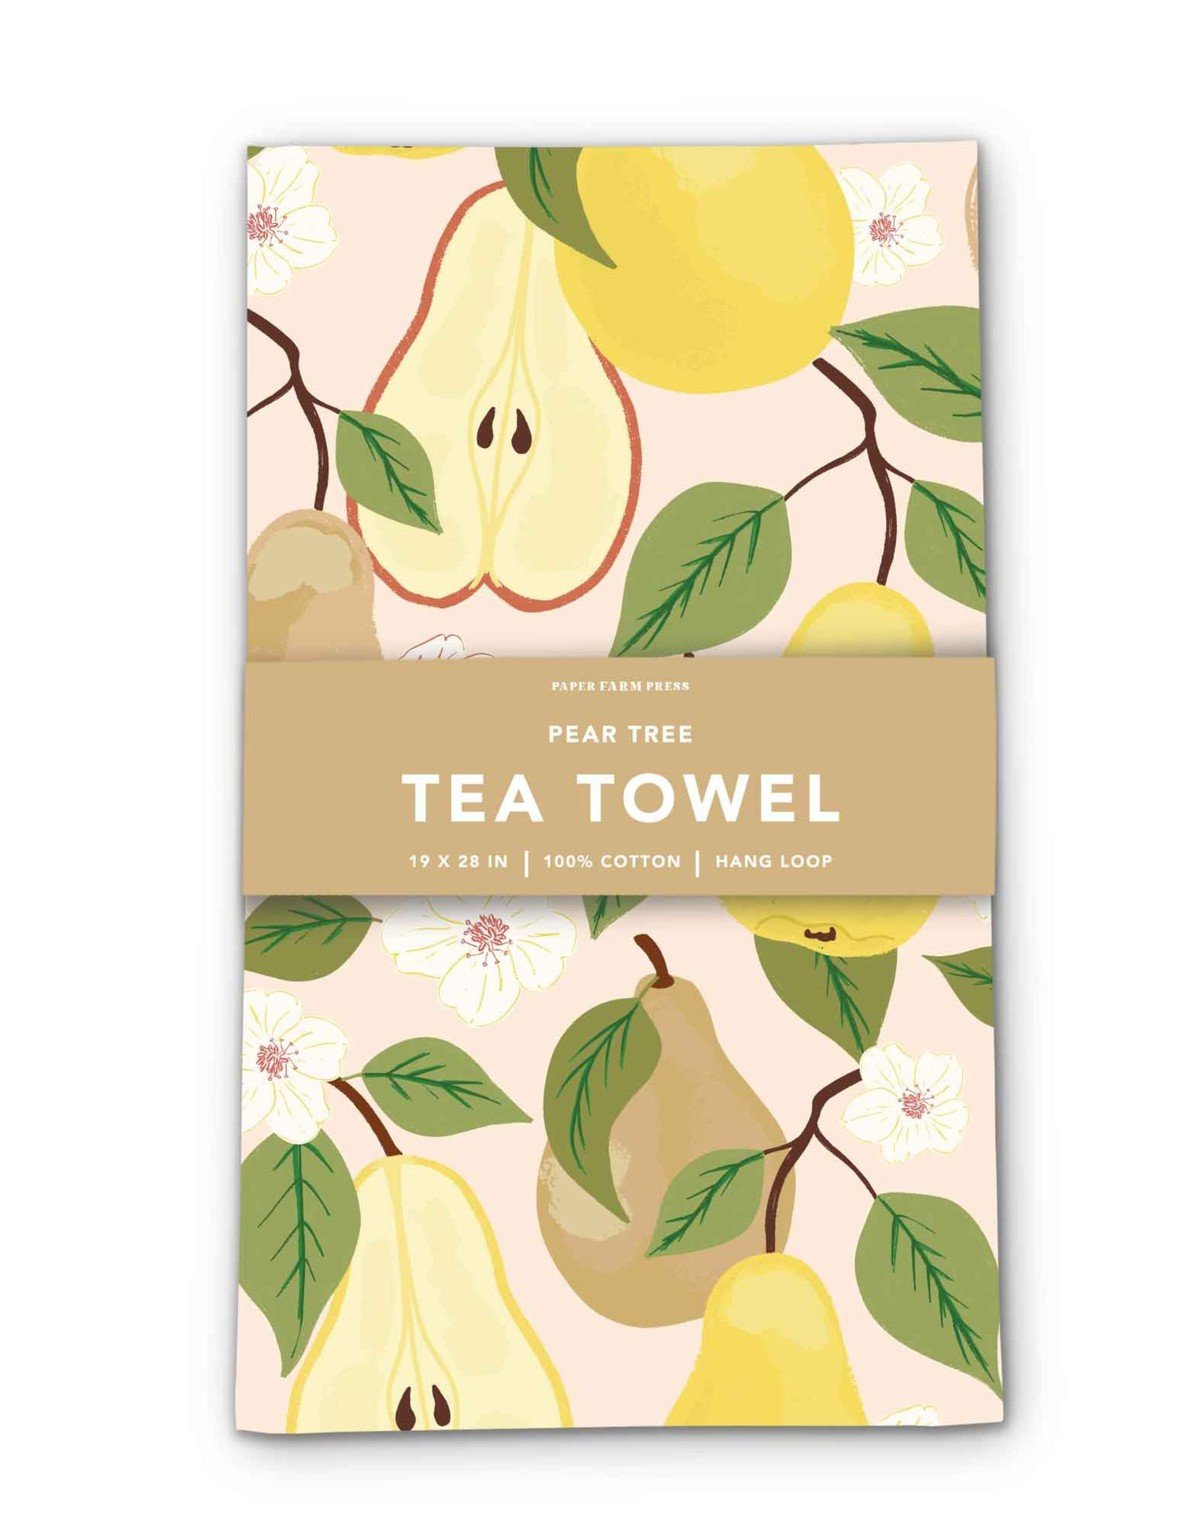 Pear Tree Tea Towel item